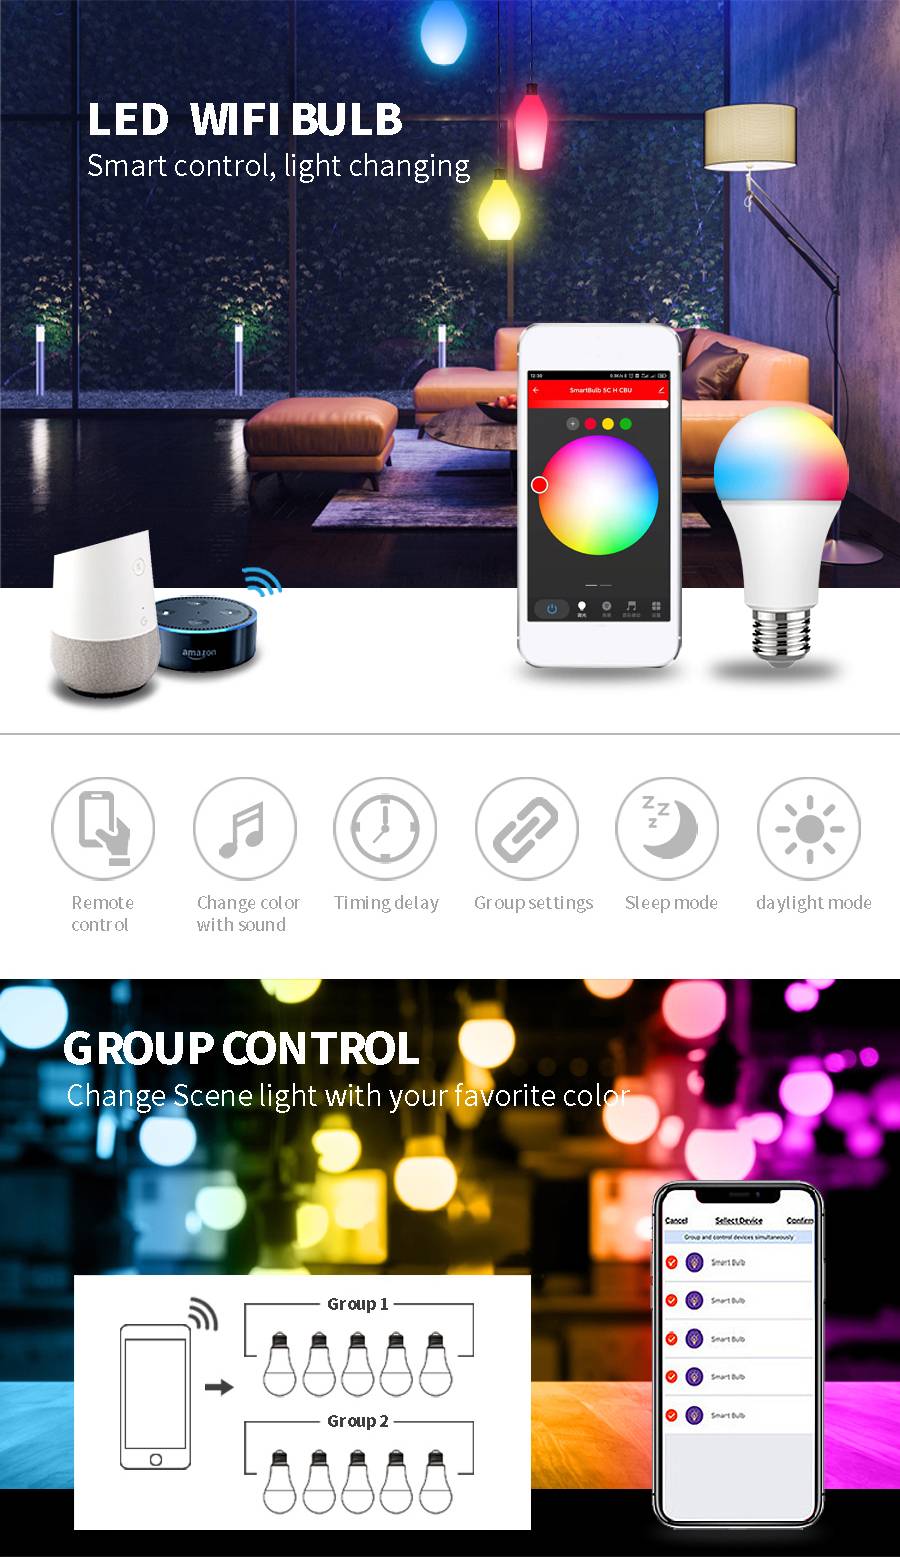 ADAYO smart LED light bulbs